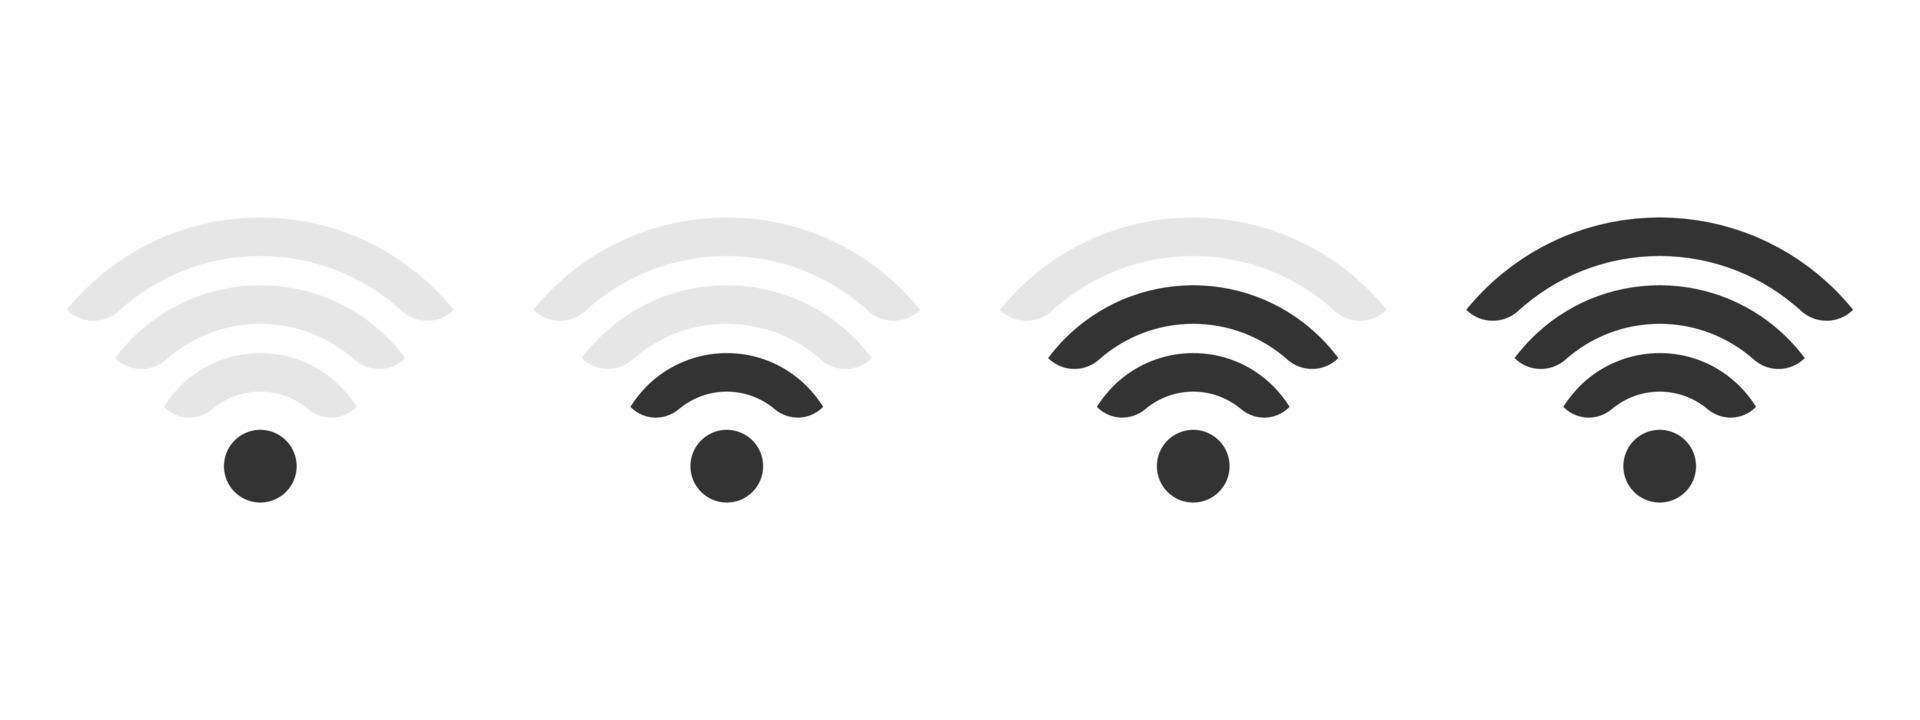 antenne Wi-Fi. icônes Wi-Fi. signe internet sans fil isolé sur fond blanc. illustration vectorielle vecteur